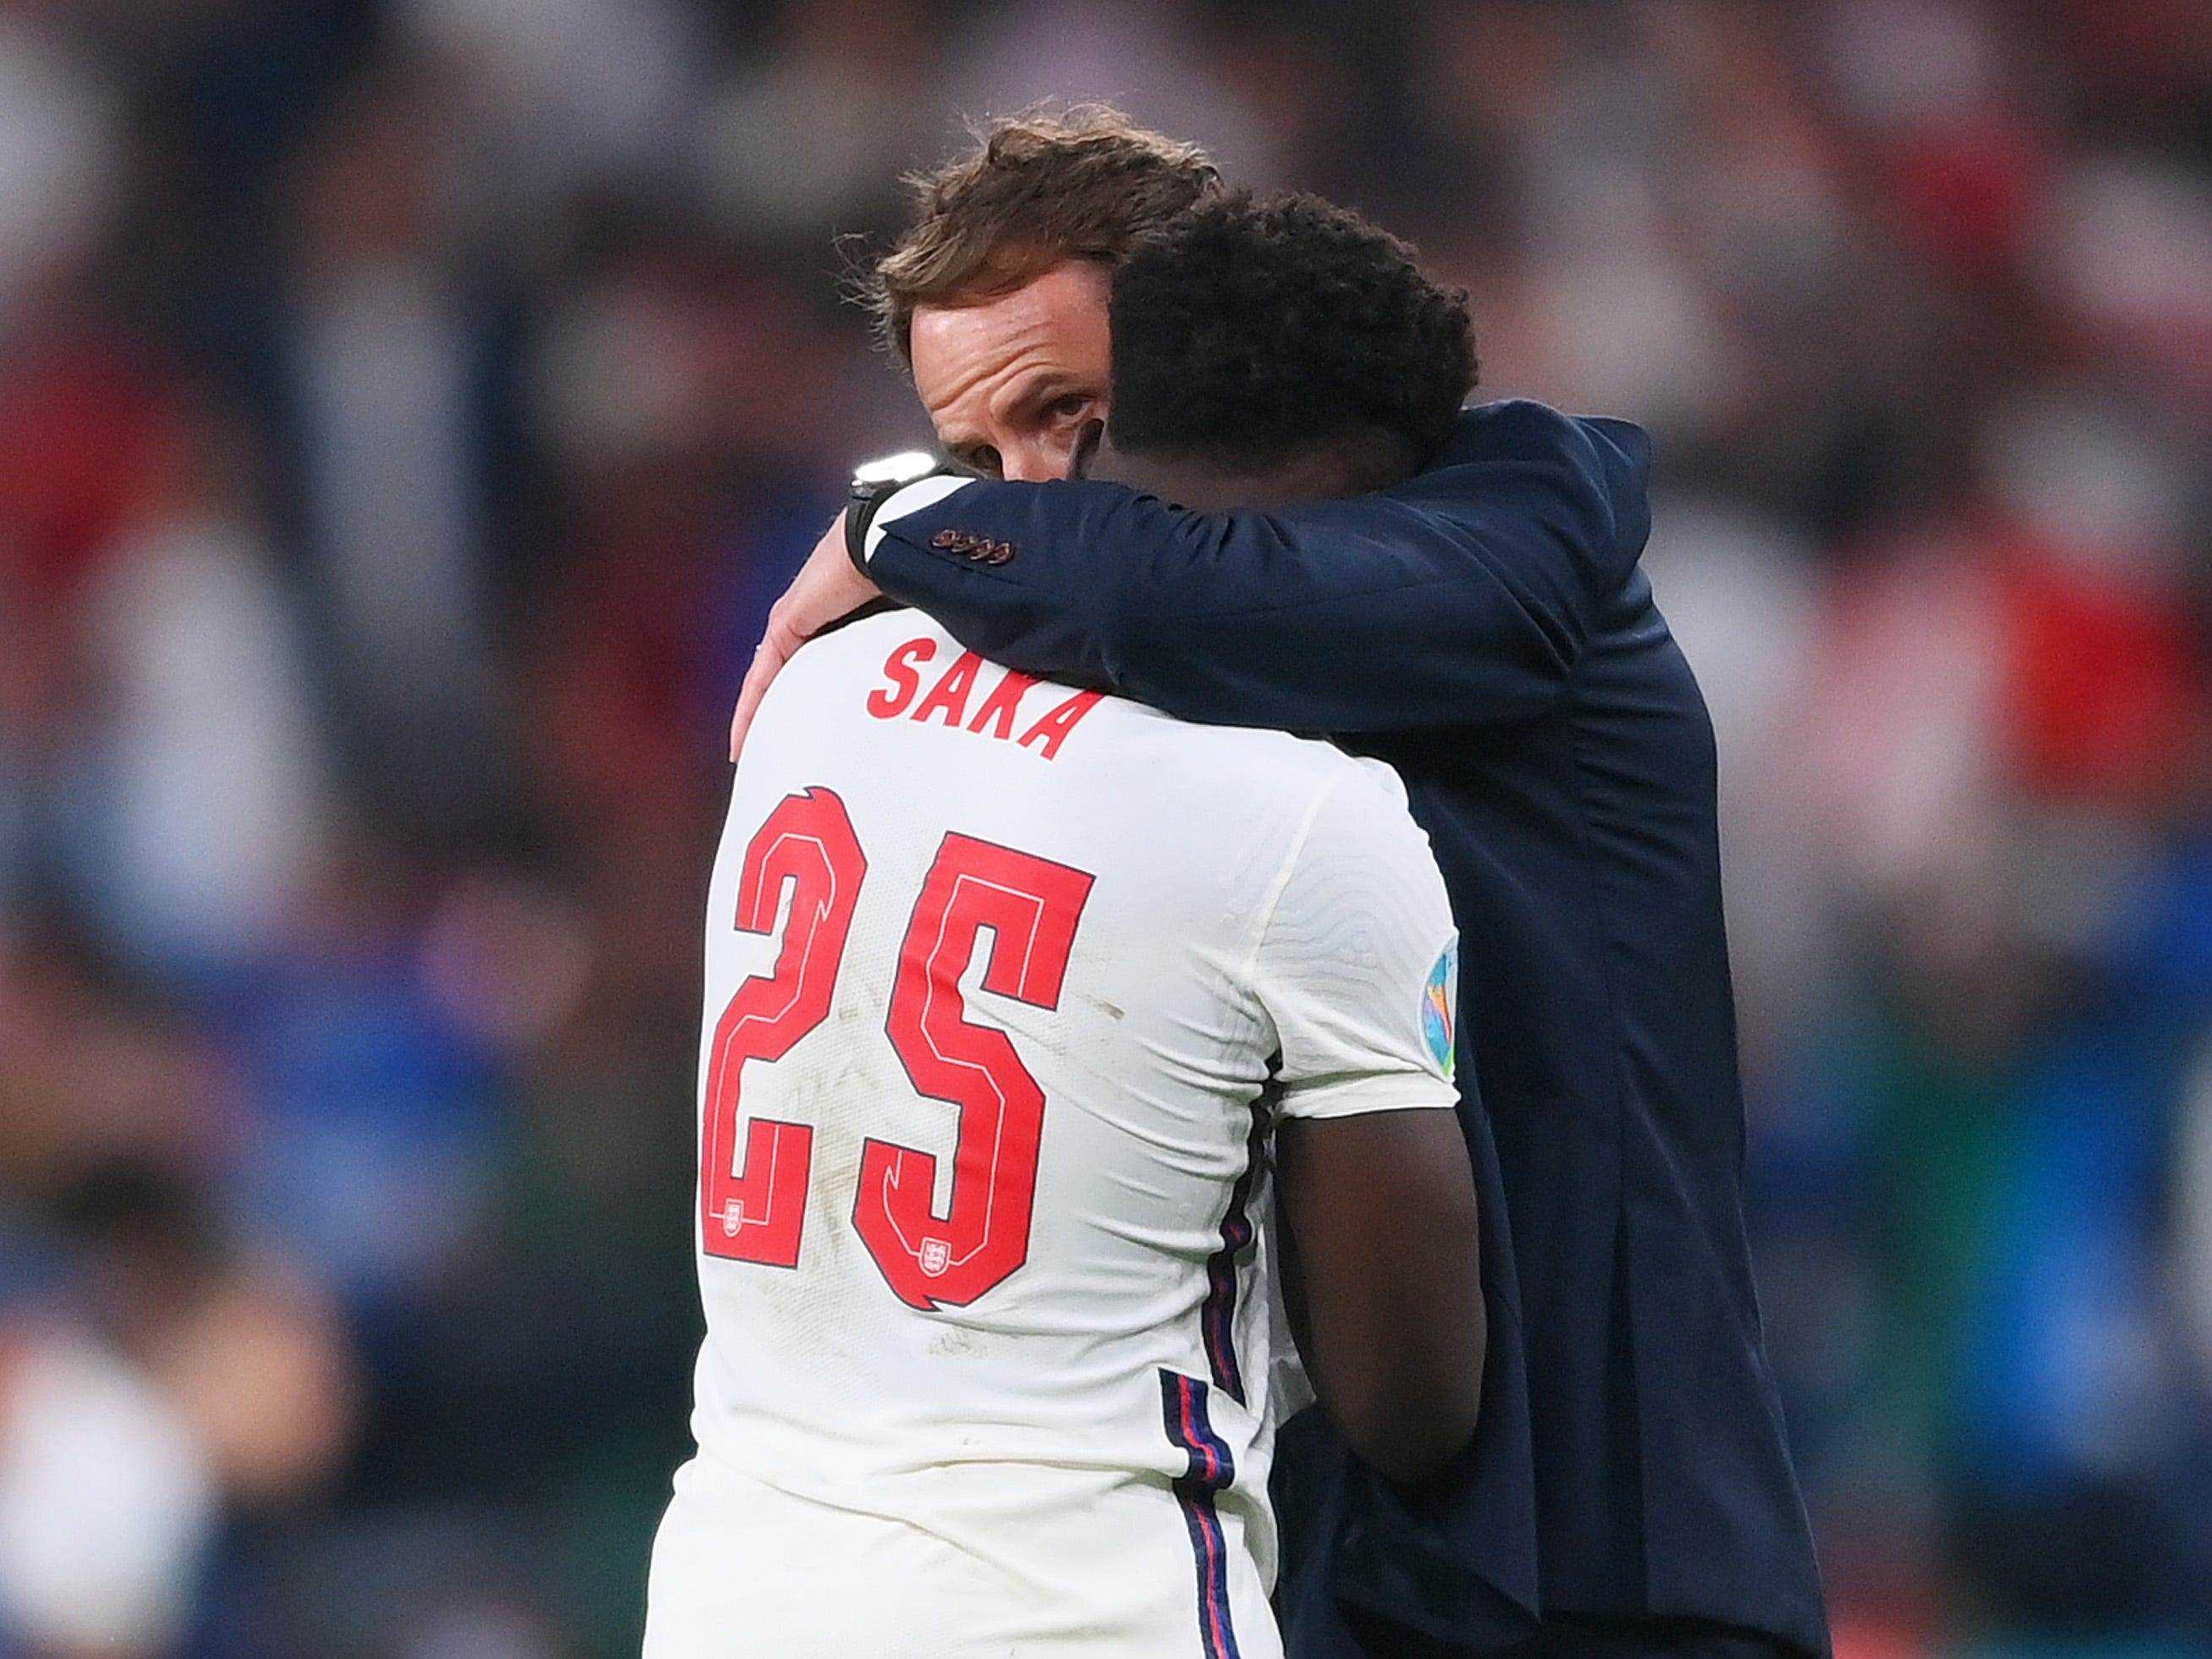 Gareth Southgate tröstet Bukayo Saka, nachdem England im Finale der Euro 2020 besiegt wurde